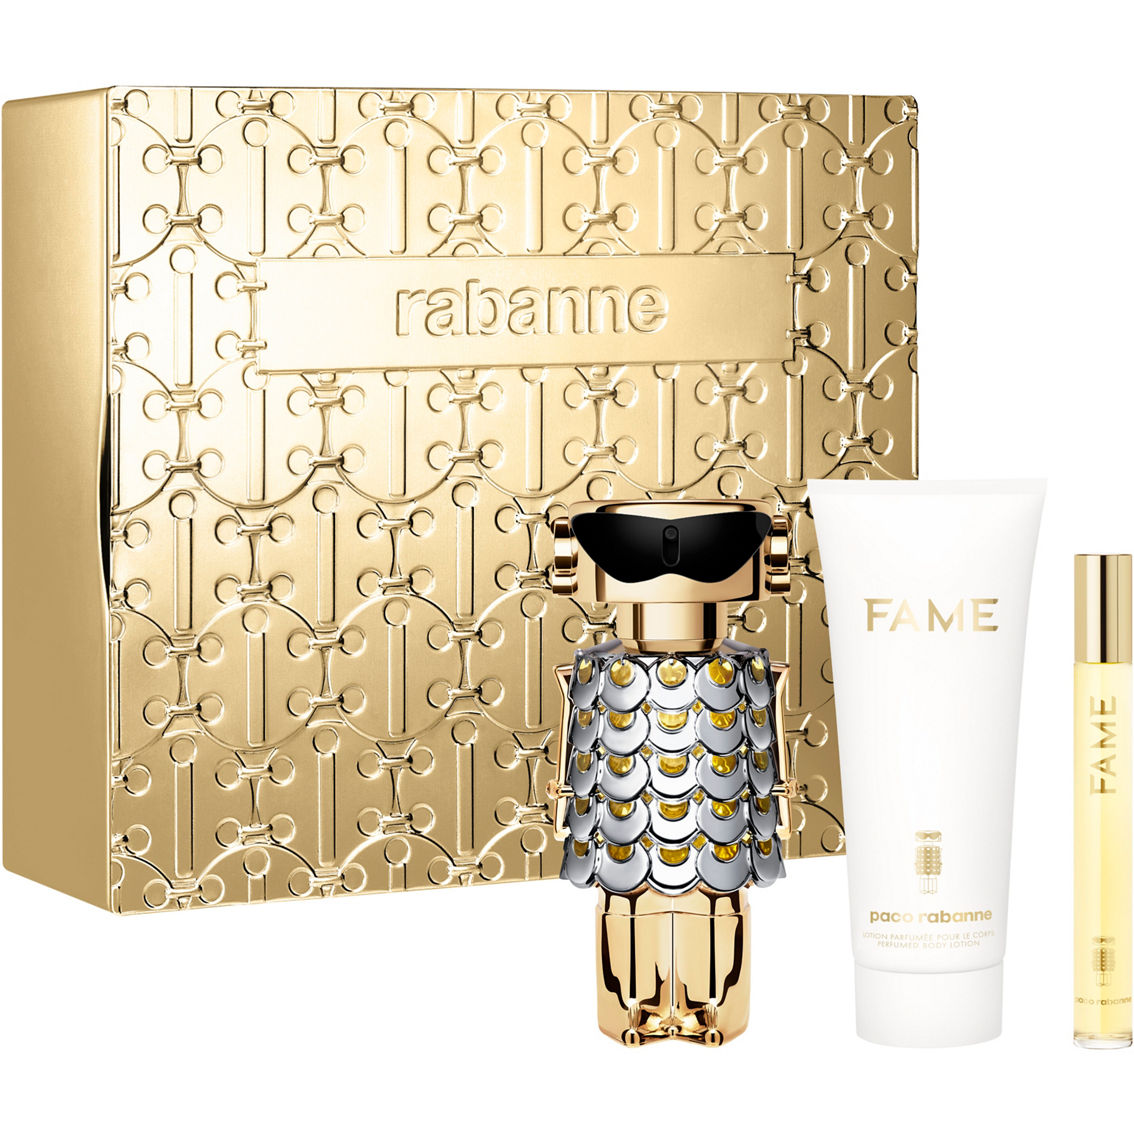 Rabanne Fame Eau De Parfum 3 Pc. Set | Gift Sets | Beauty & Health ...